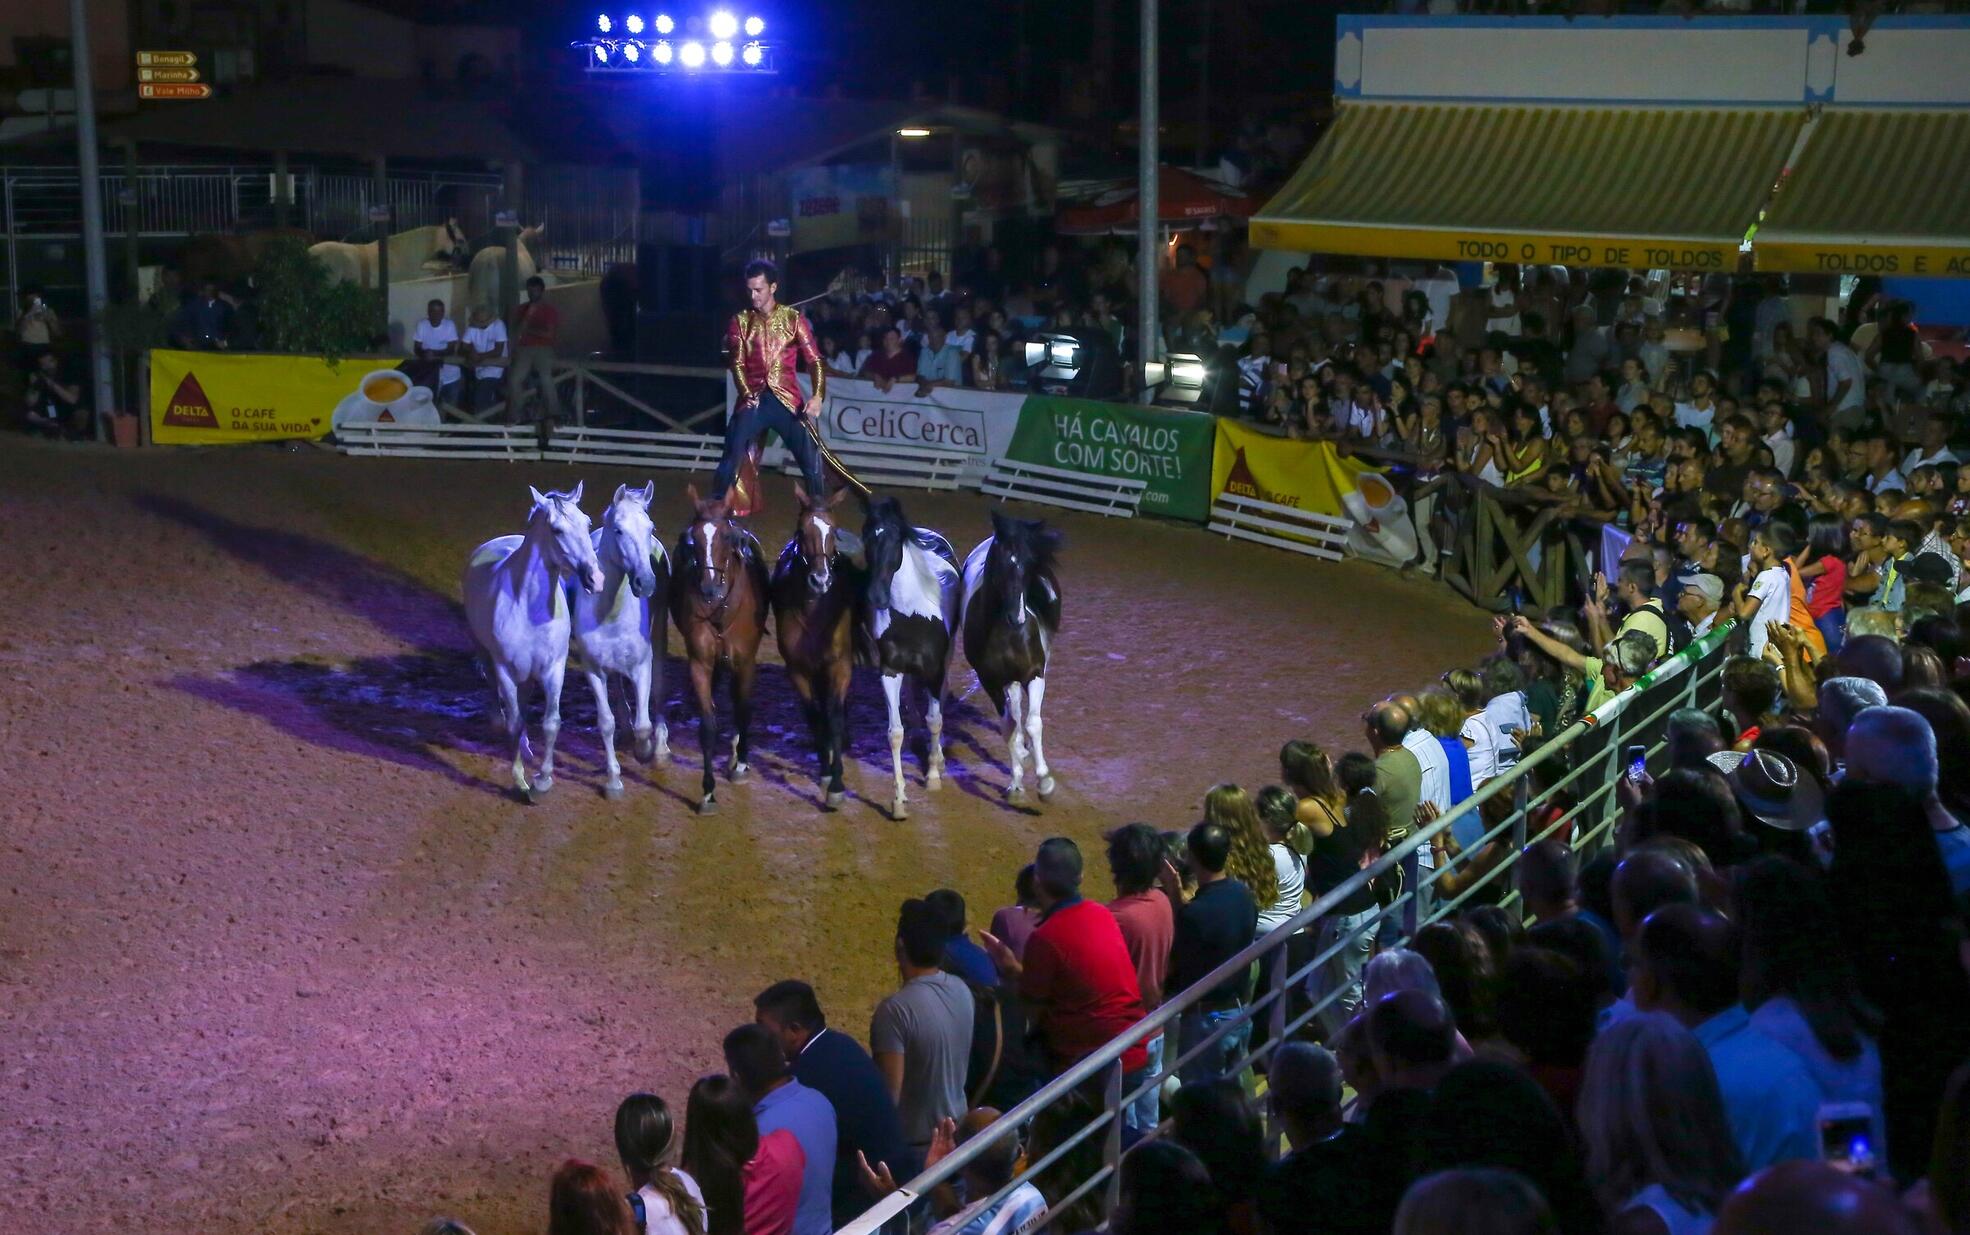 42ª Edição da FATACIL apresenta um Programa Equestre ambicioso com cavaleiros de renome nacional ...